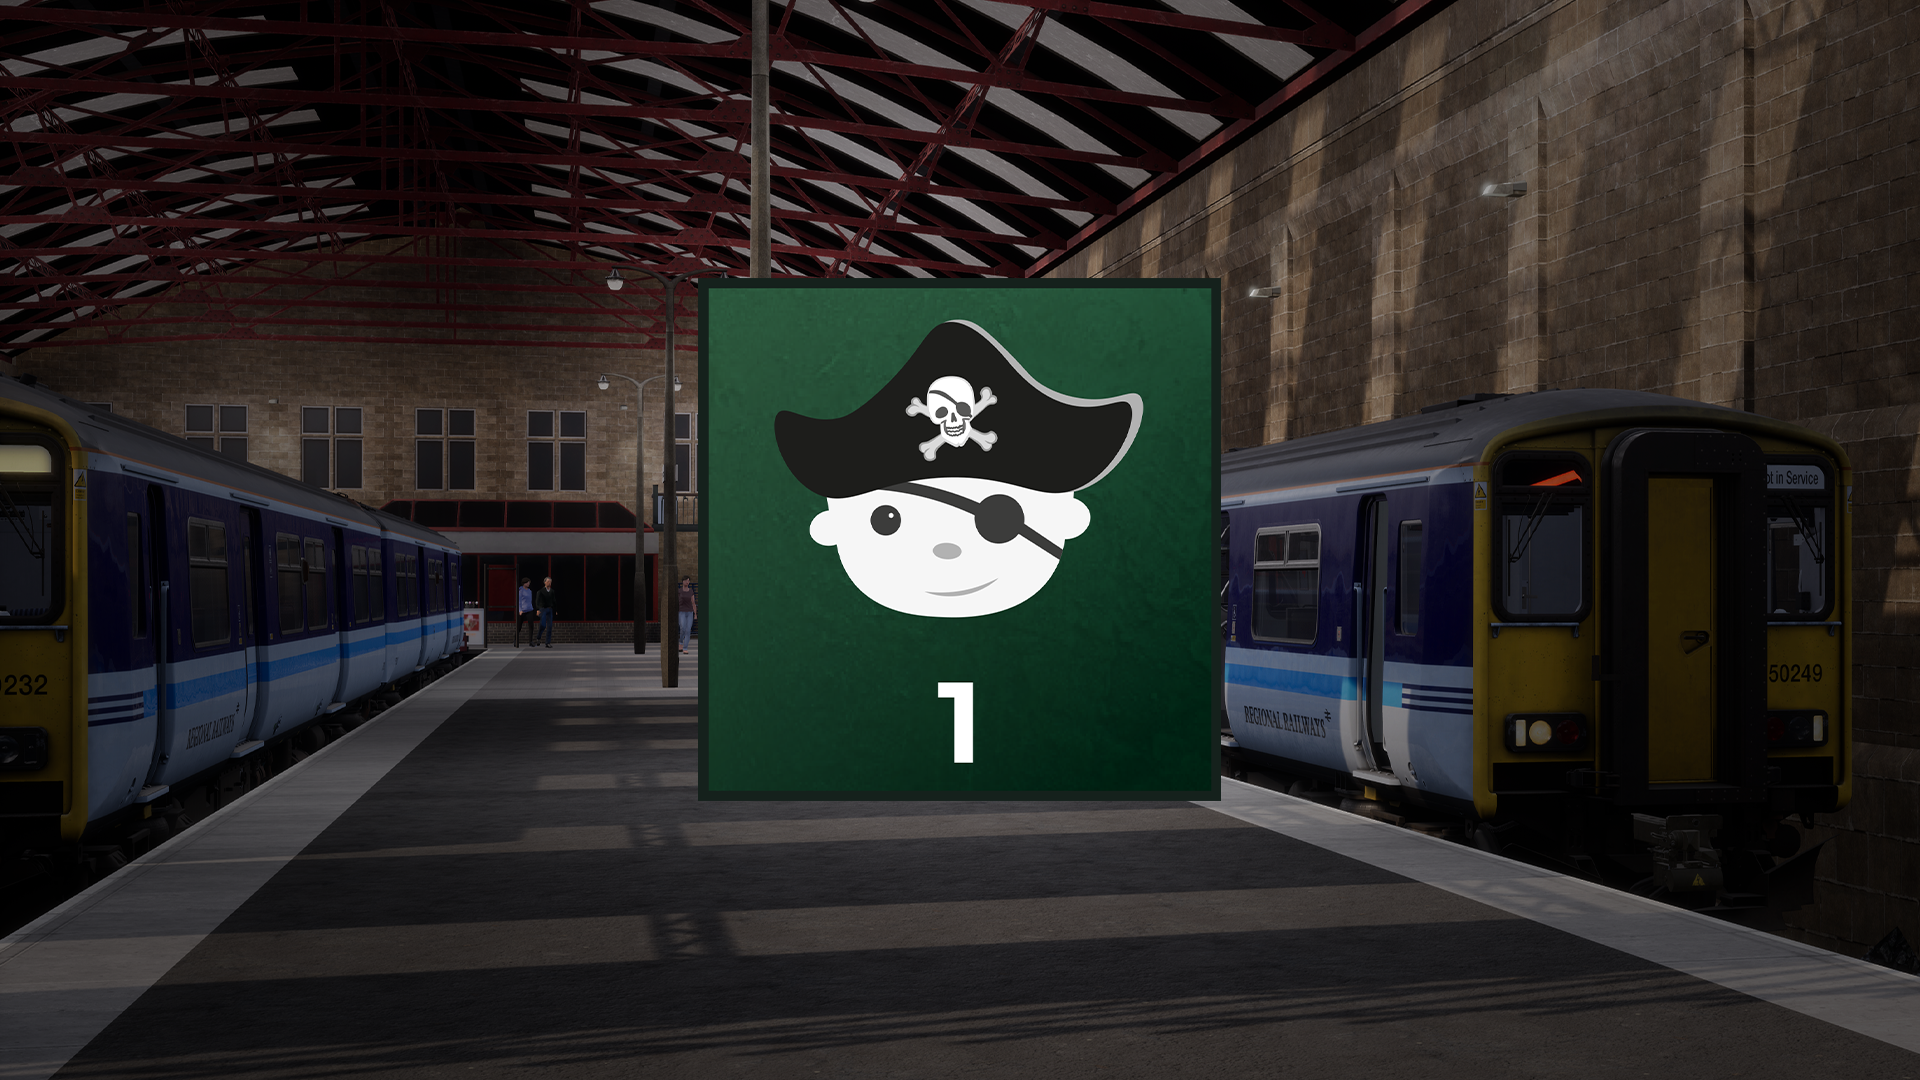 Icon for WCL: Apprentice Pirate